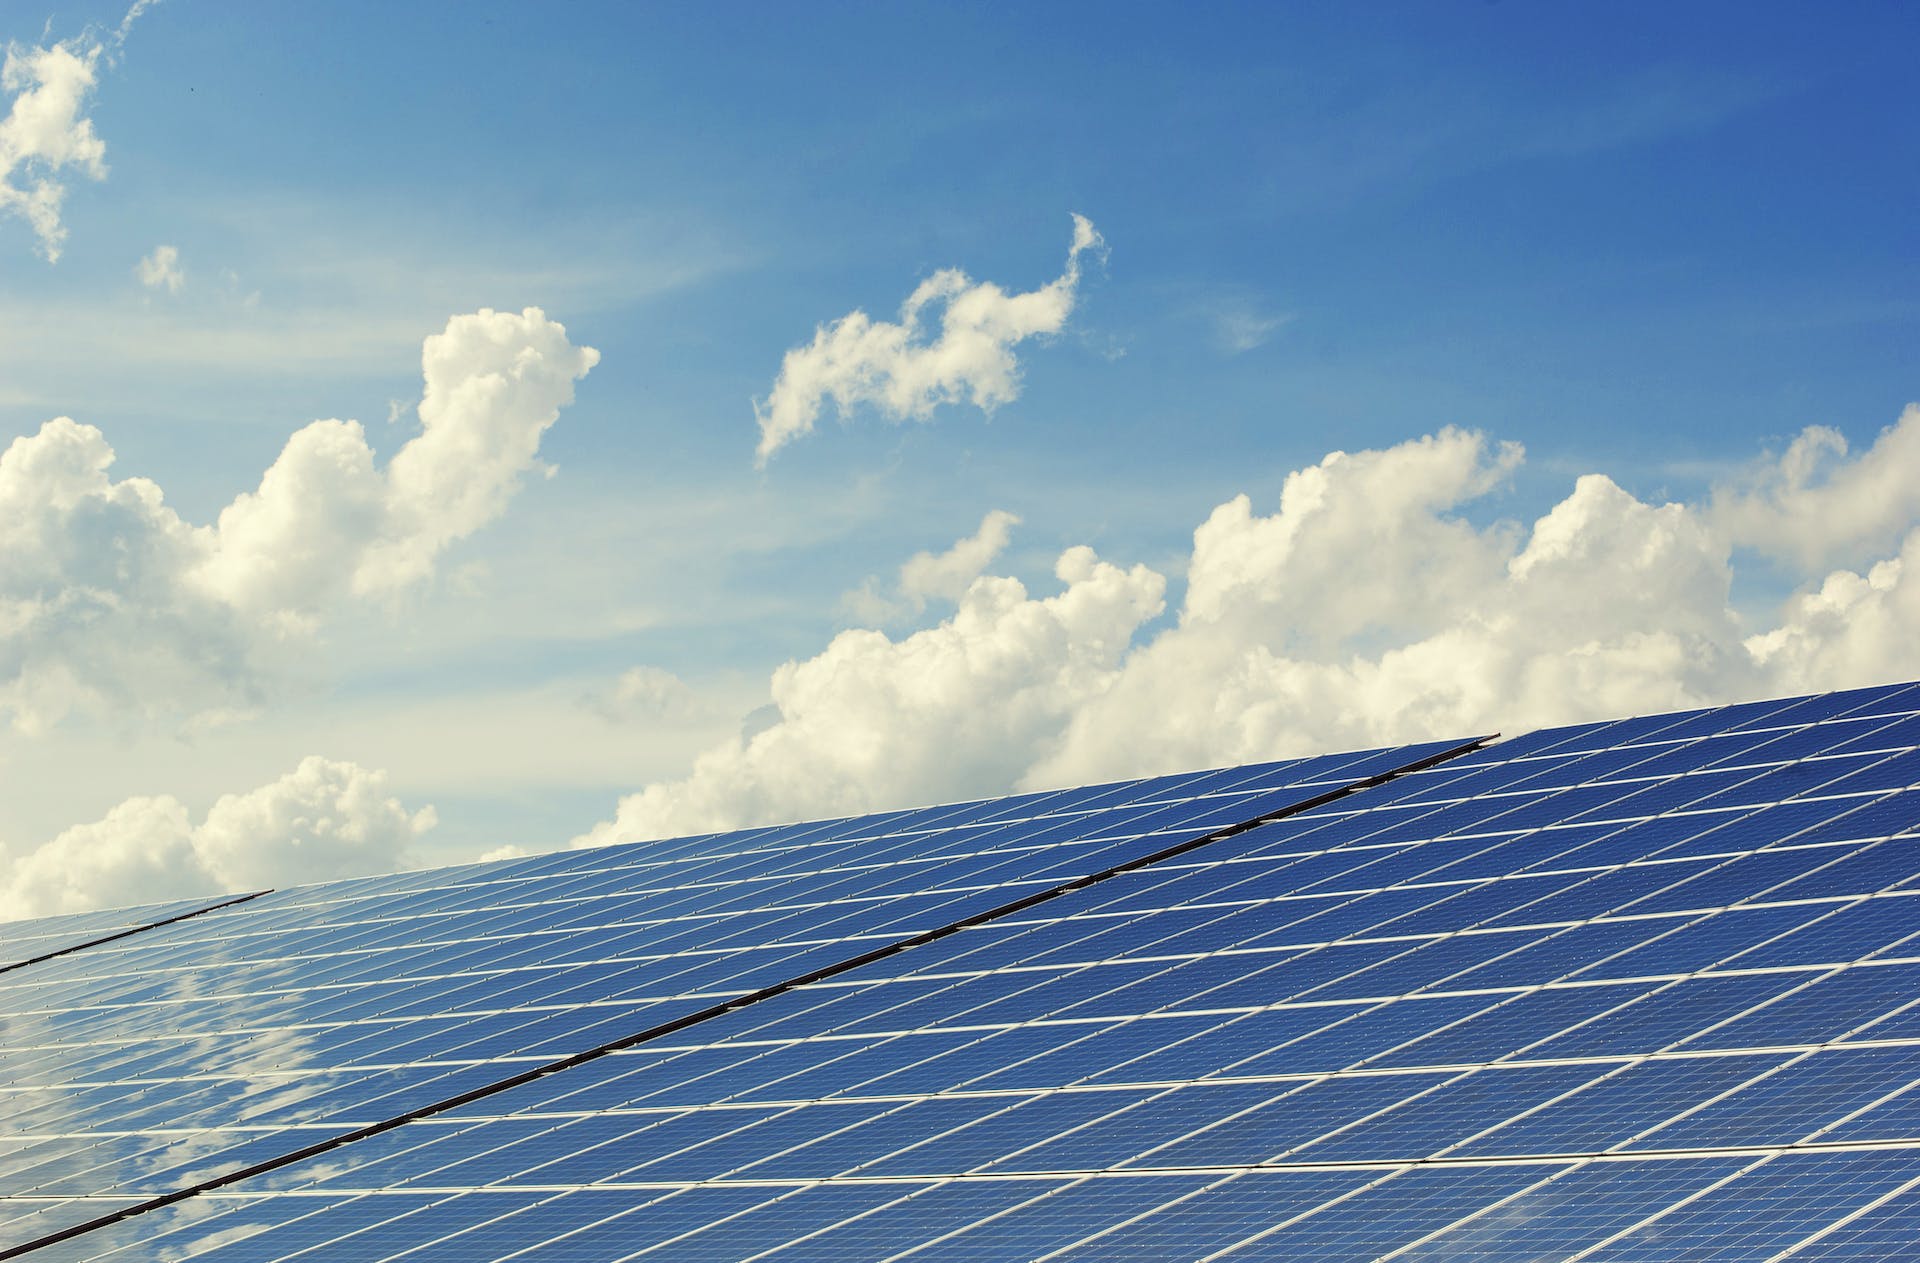 Brenmiller Energy genera electricidad durante el día a través de paneles solares en los tejados. Foto: Pixabay/Pexels.